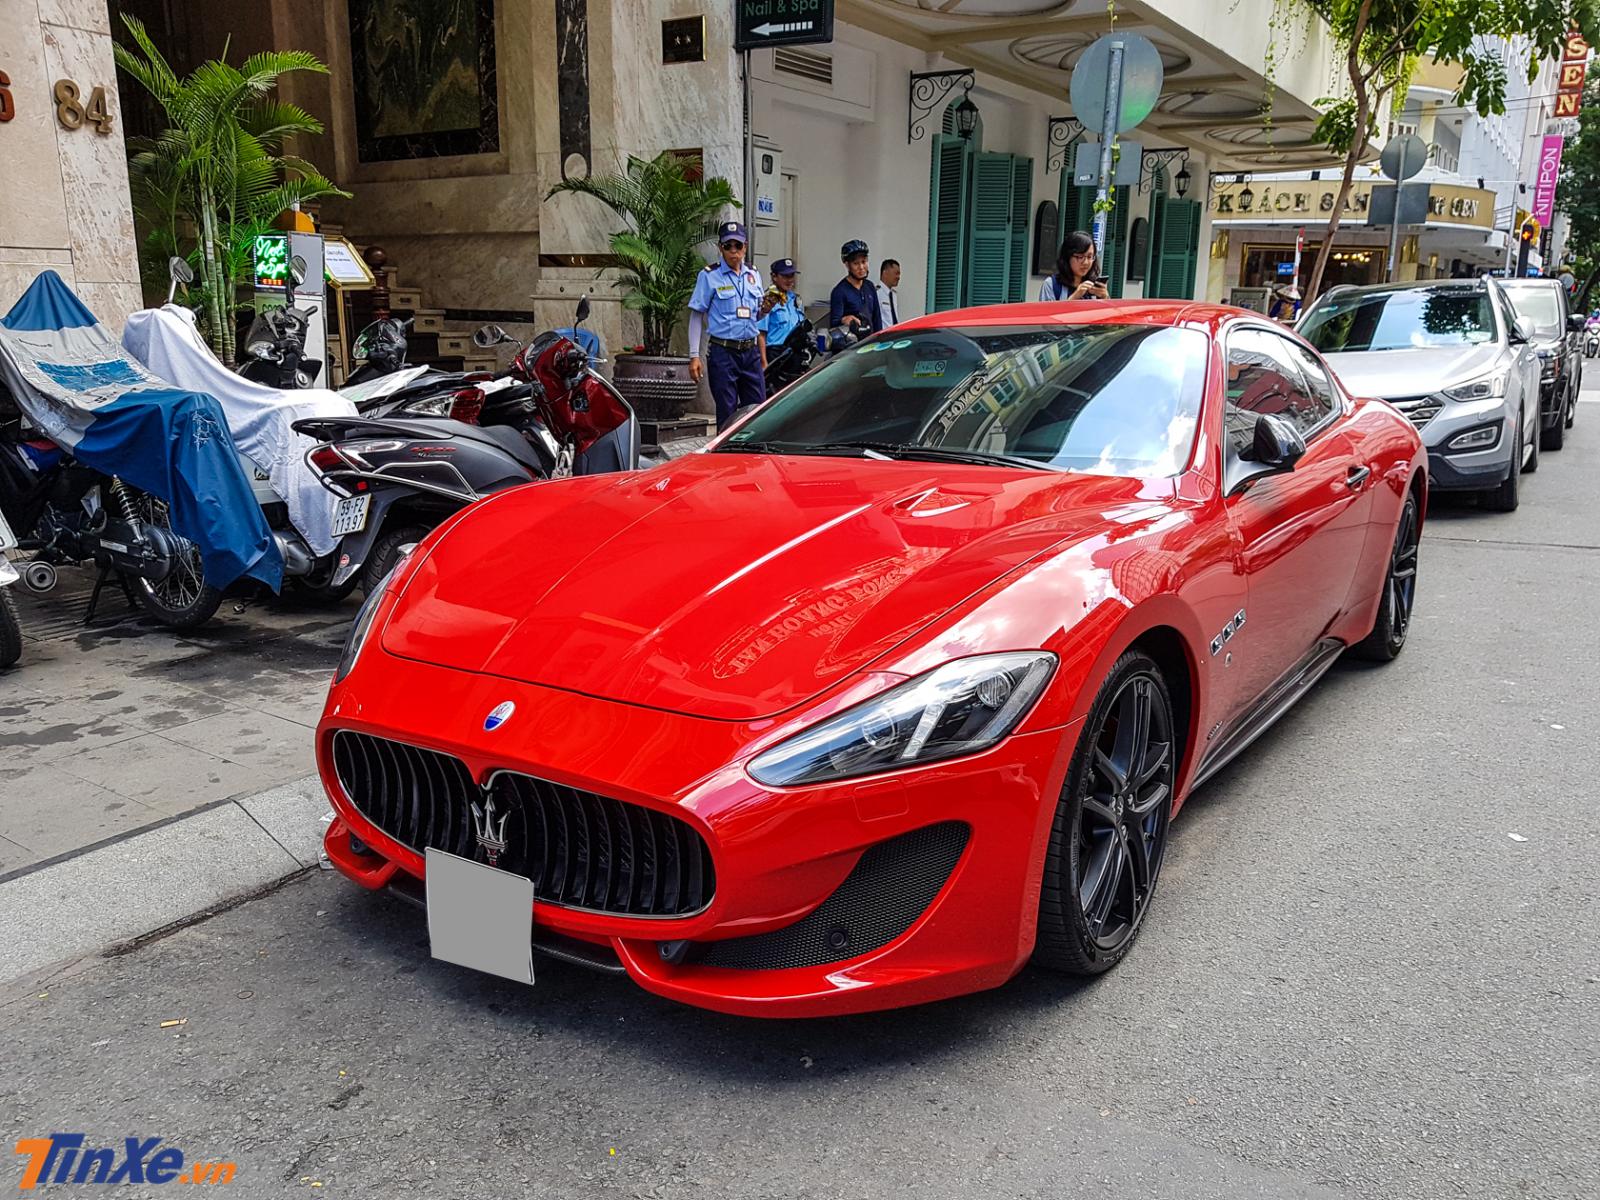 chủ nhân của chiếc xe thể thao hạng sang Maserati GranTurismo Sport màu đỏ này là người hiếm hoi sở hữu đến 3 chiếc xe của Maserati tại Việt Nam